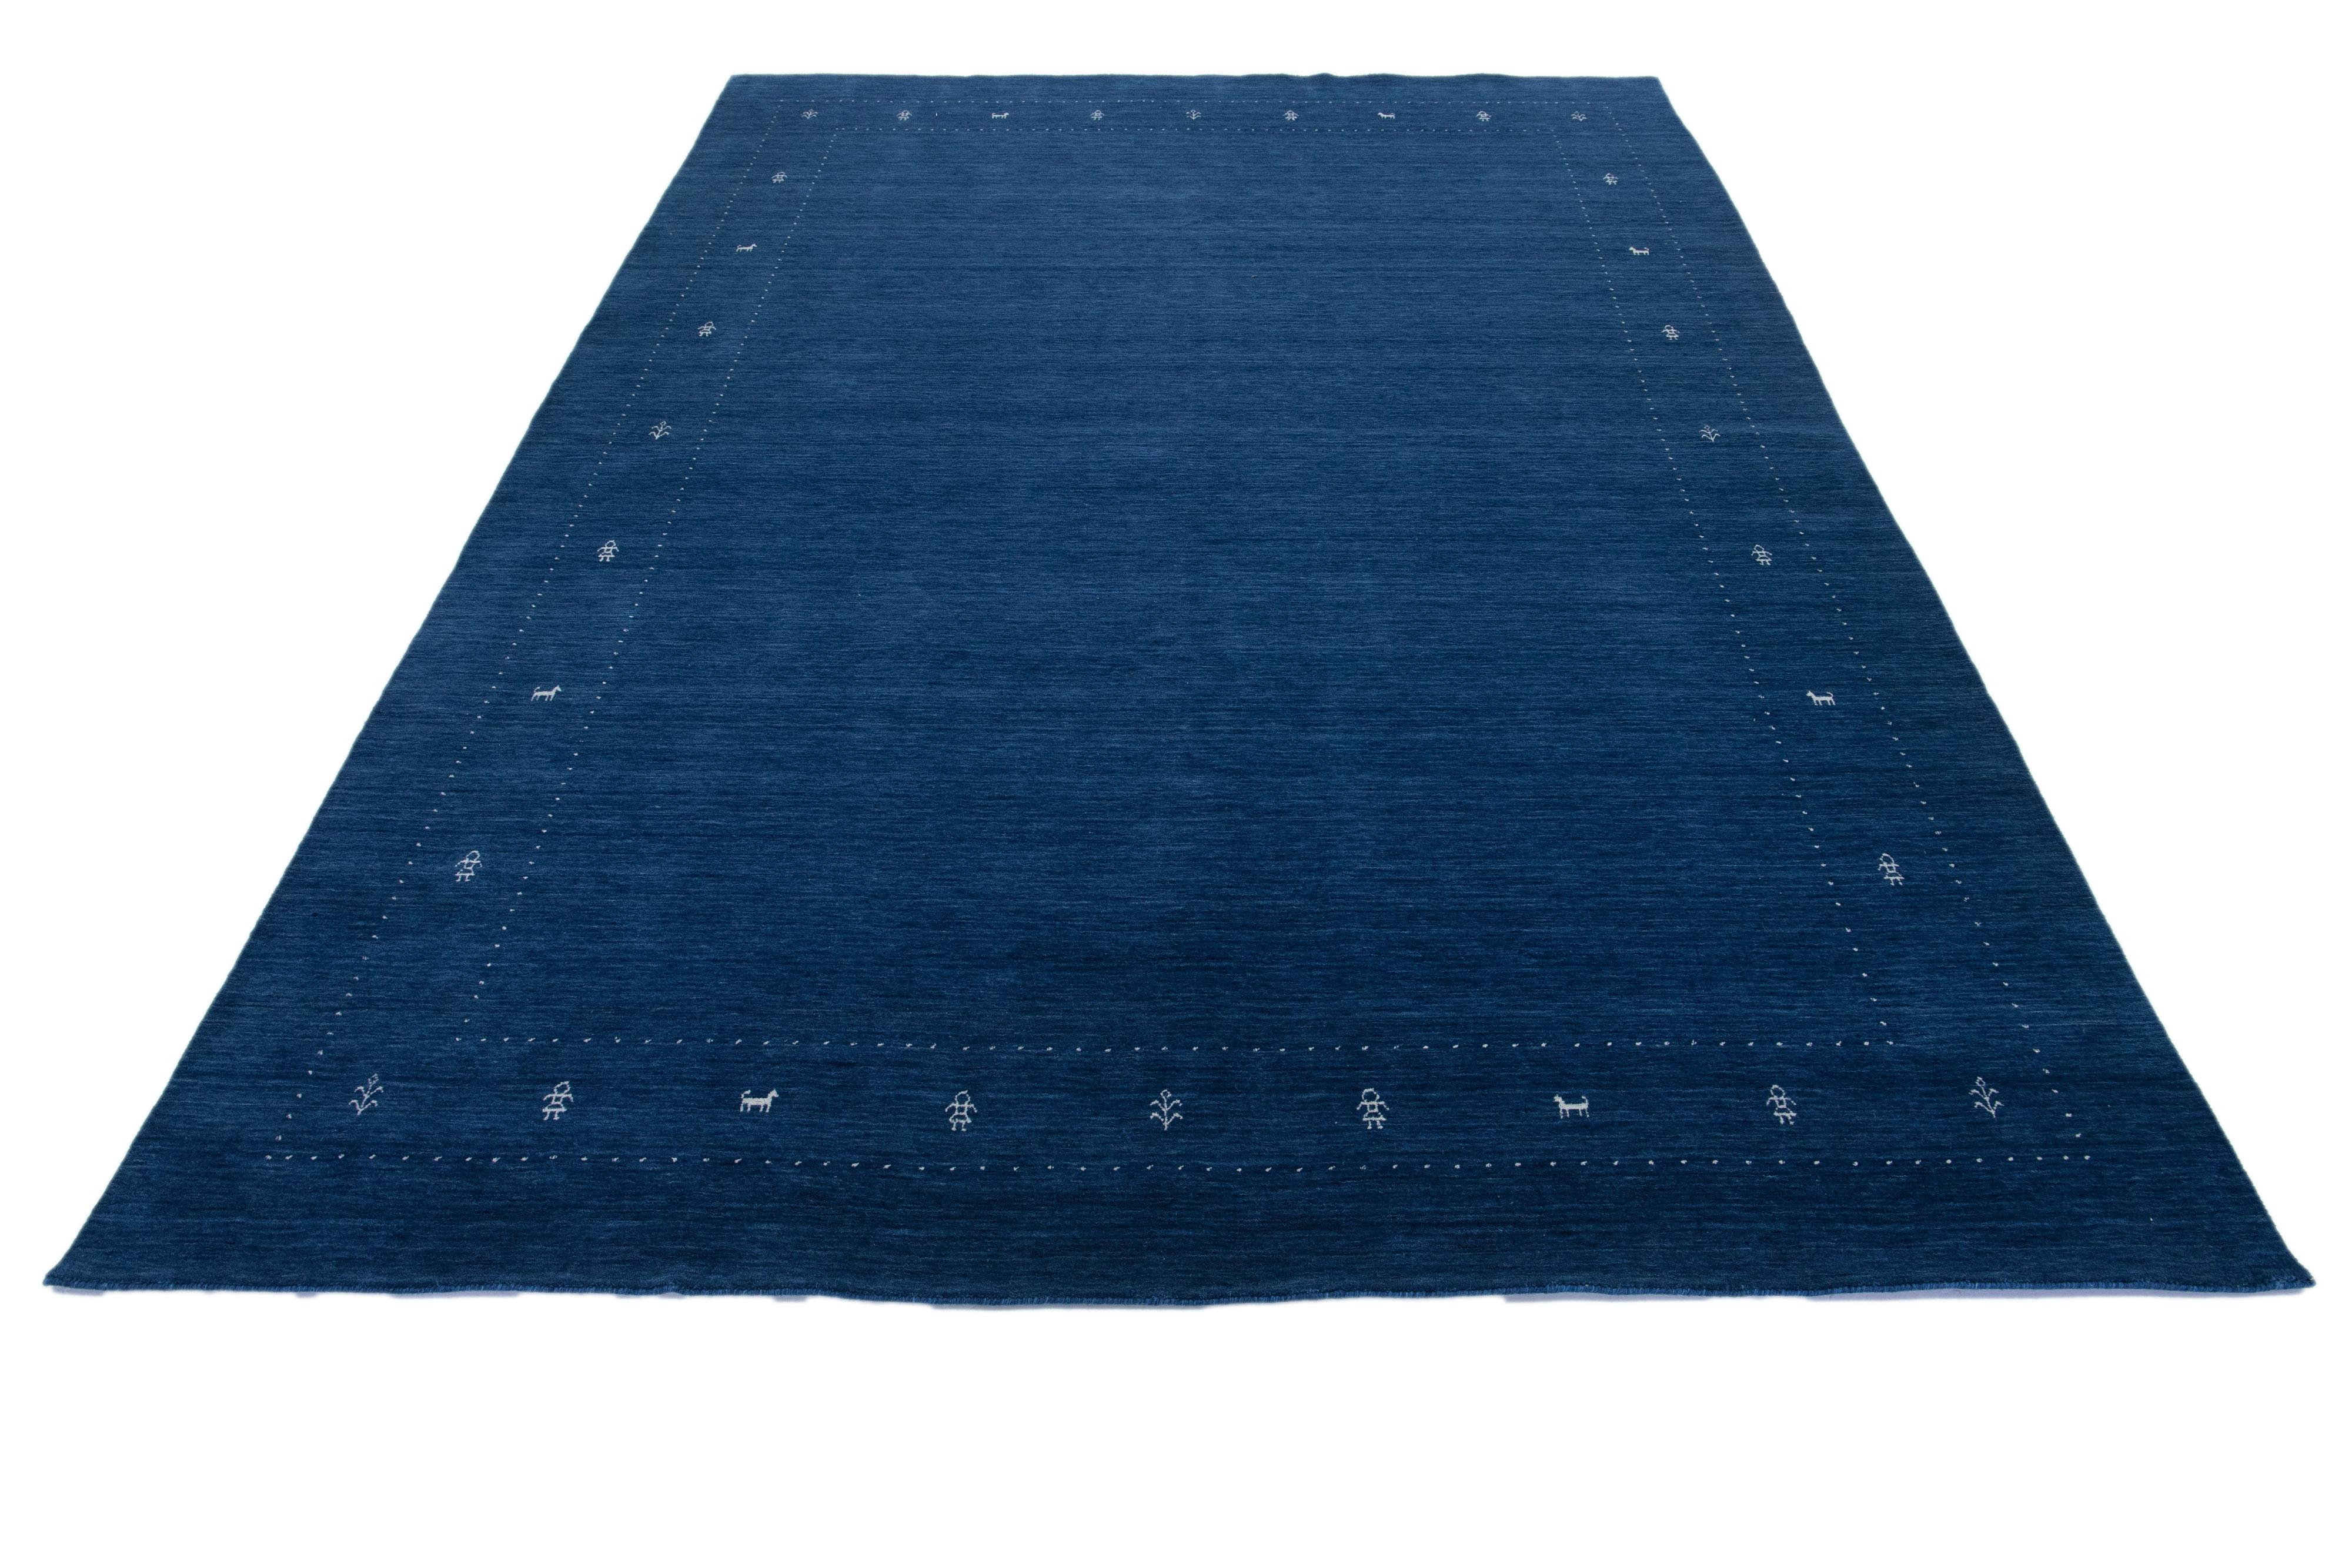 Ce tapis Gabbeh moderne est tissé à la main avec un motif géométrique minimaliste contemporain. La base bleue est rehaussée de détails blancs.

Ce tapis mesure 10' x 13'9